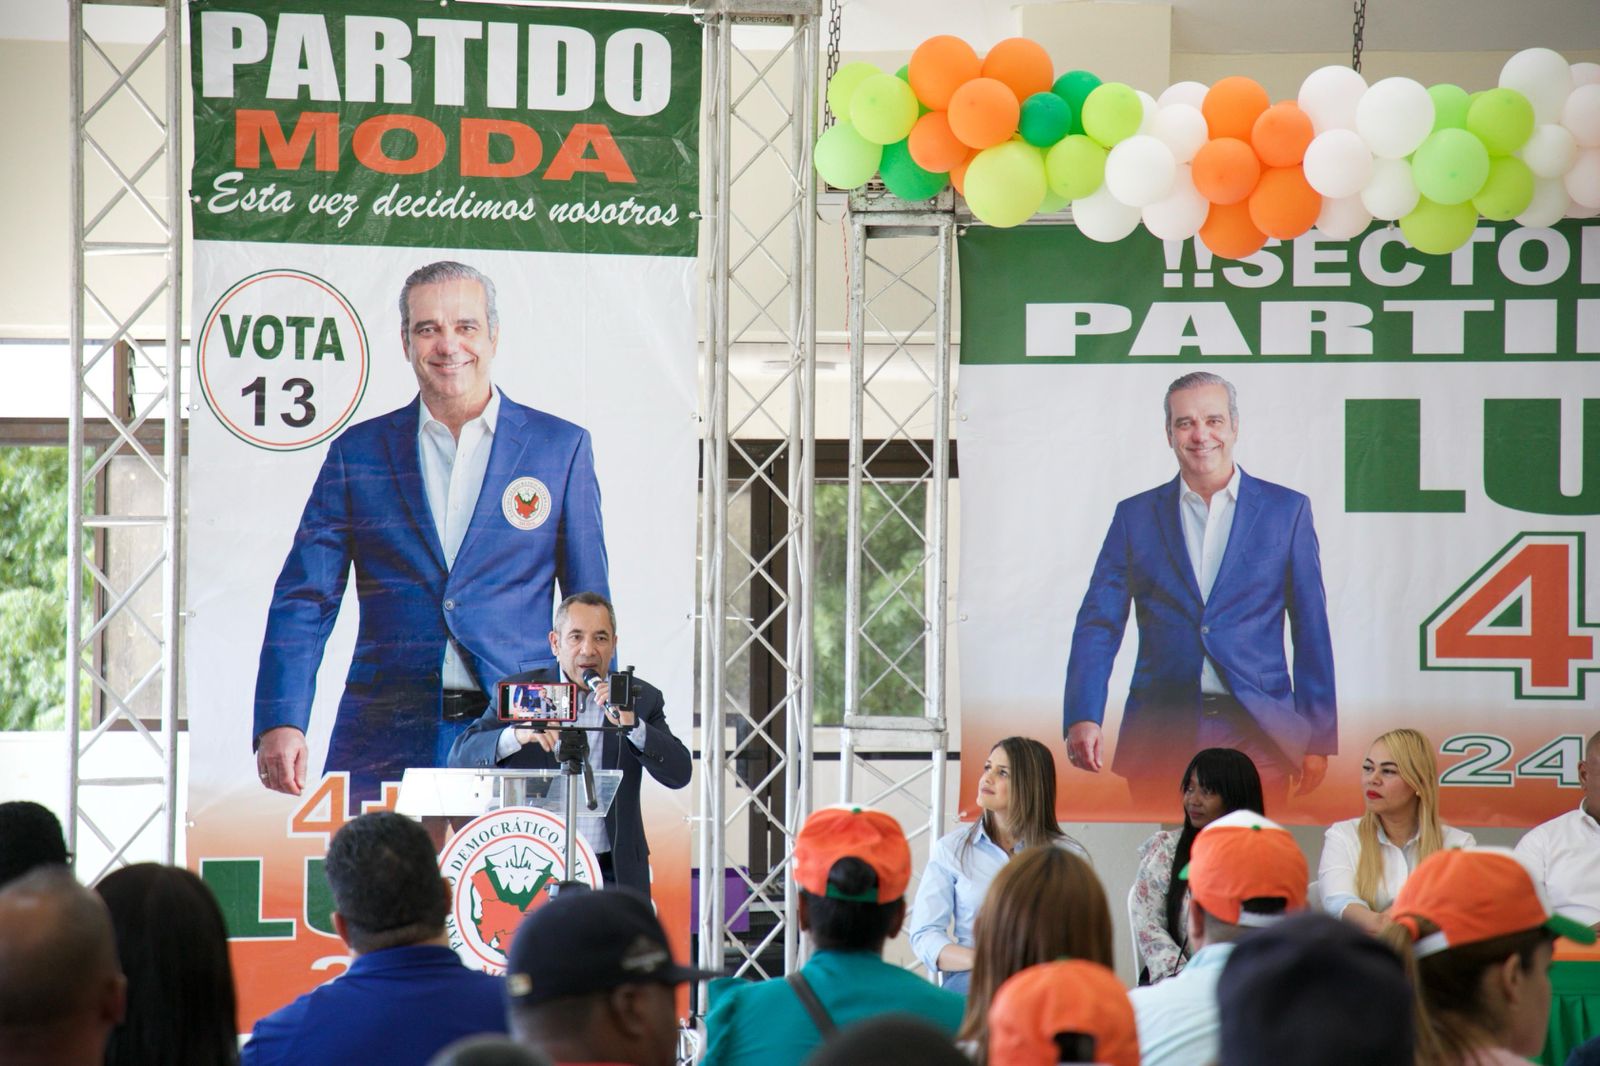 Prrsidente del Partido (MODA) el Dr. Elsido Díaz, dejó juramentado la Dirección Nacional del Sector Externo